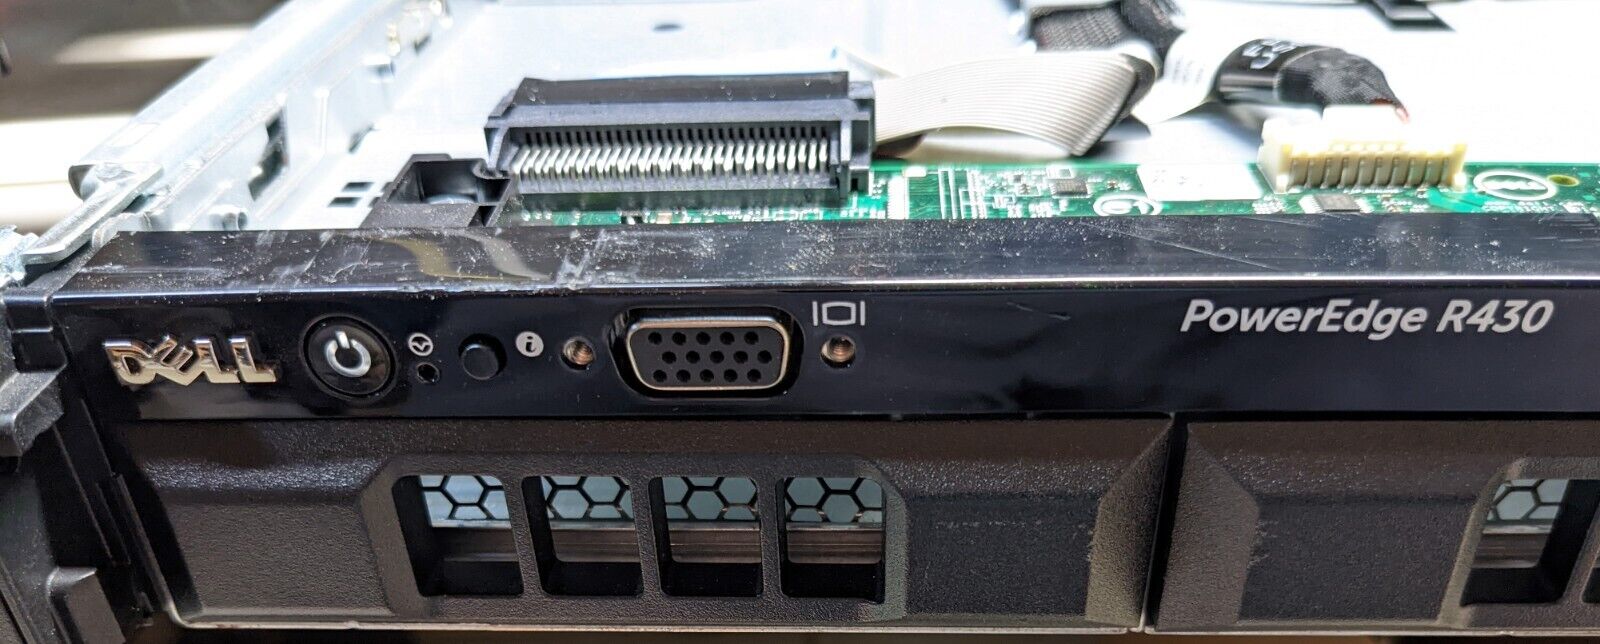 Dell PowerEdge R430 1U Server E5-2650 v3 2.3ghz 10Cores 32gb NO HDD - TESTED